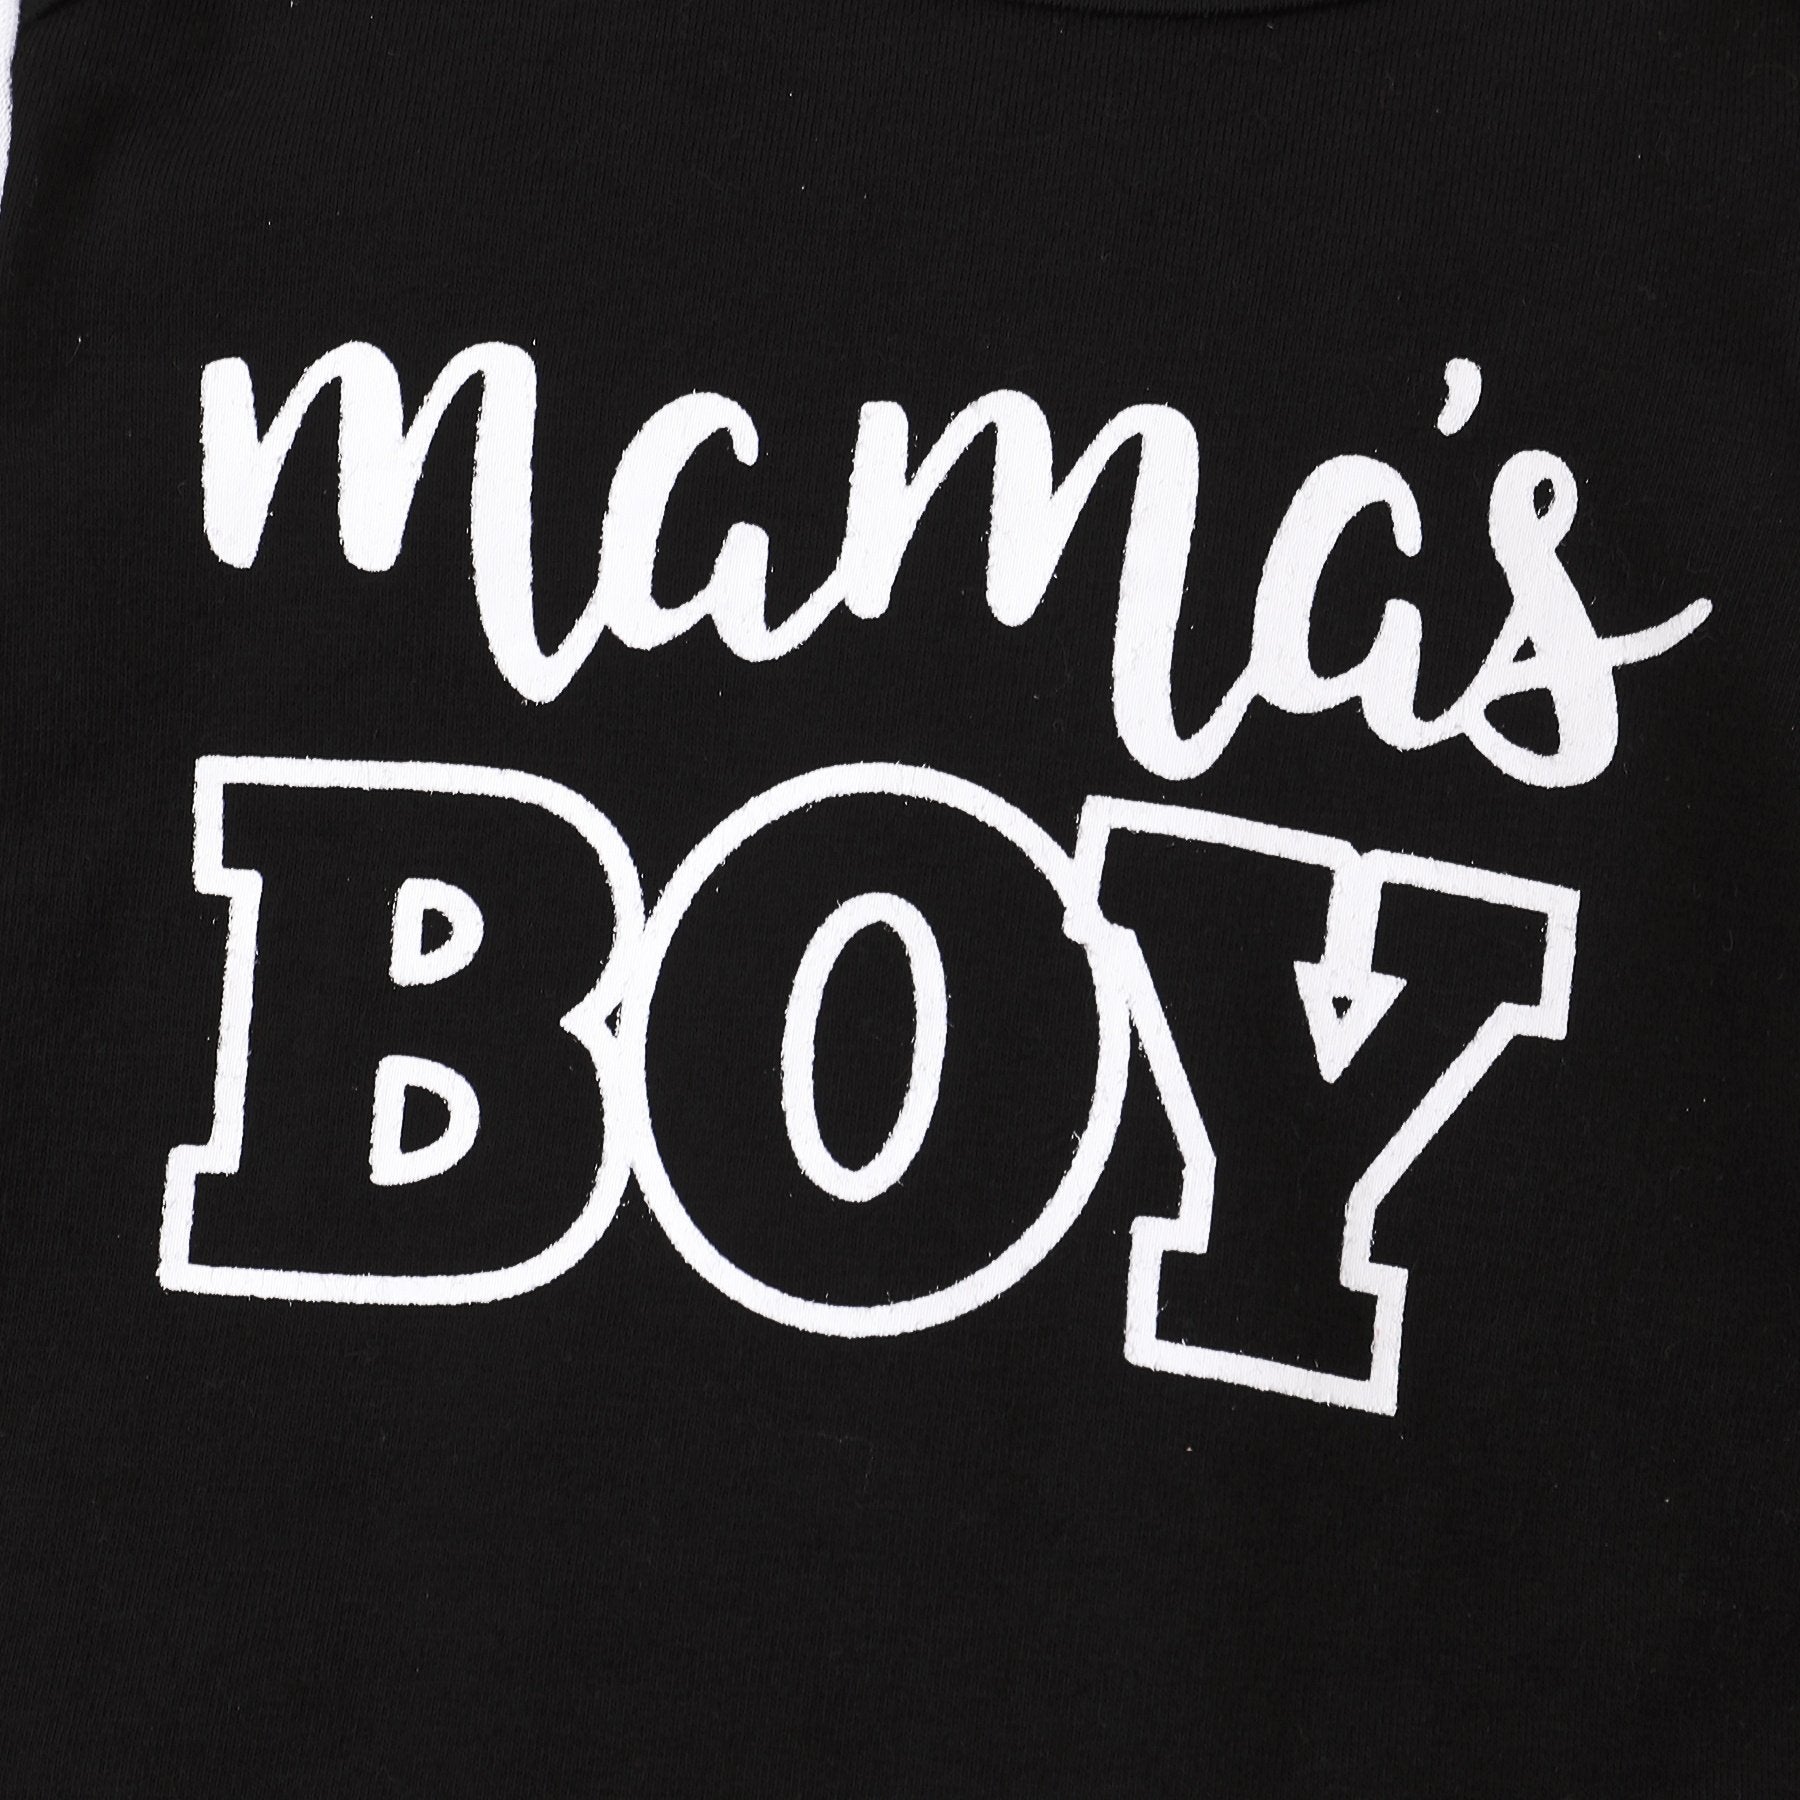 Conjunto de bebé con estampado de camuflaje y letras Mama's Boy de 3 piezas